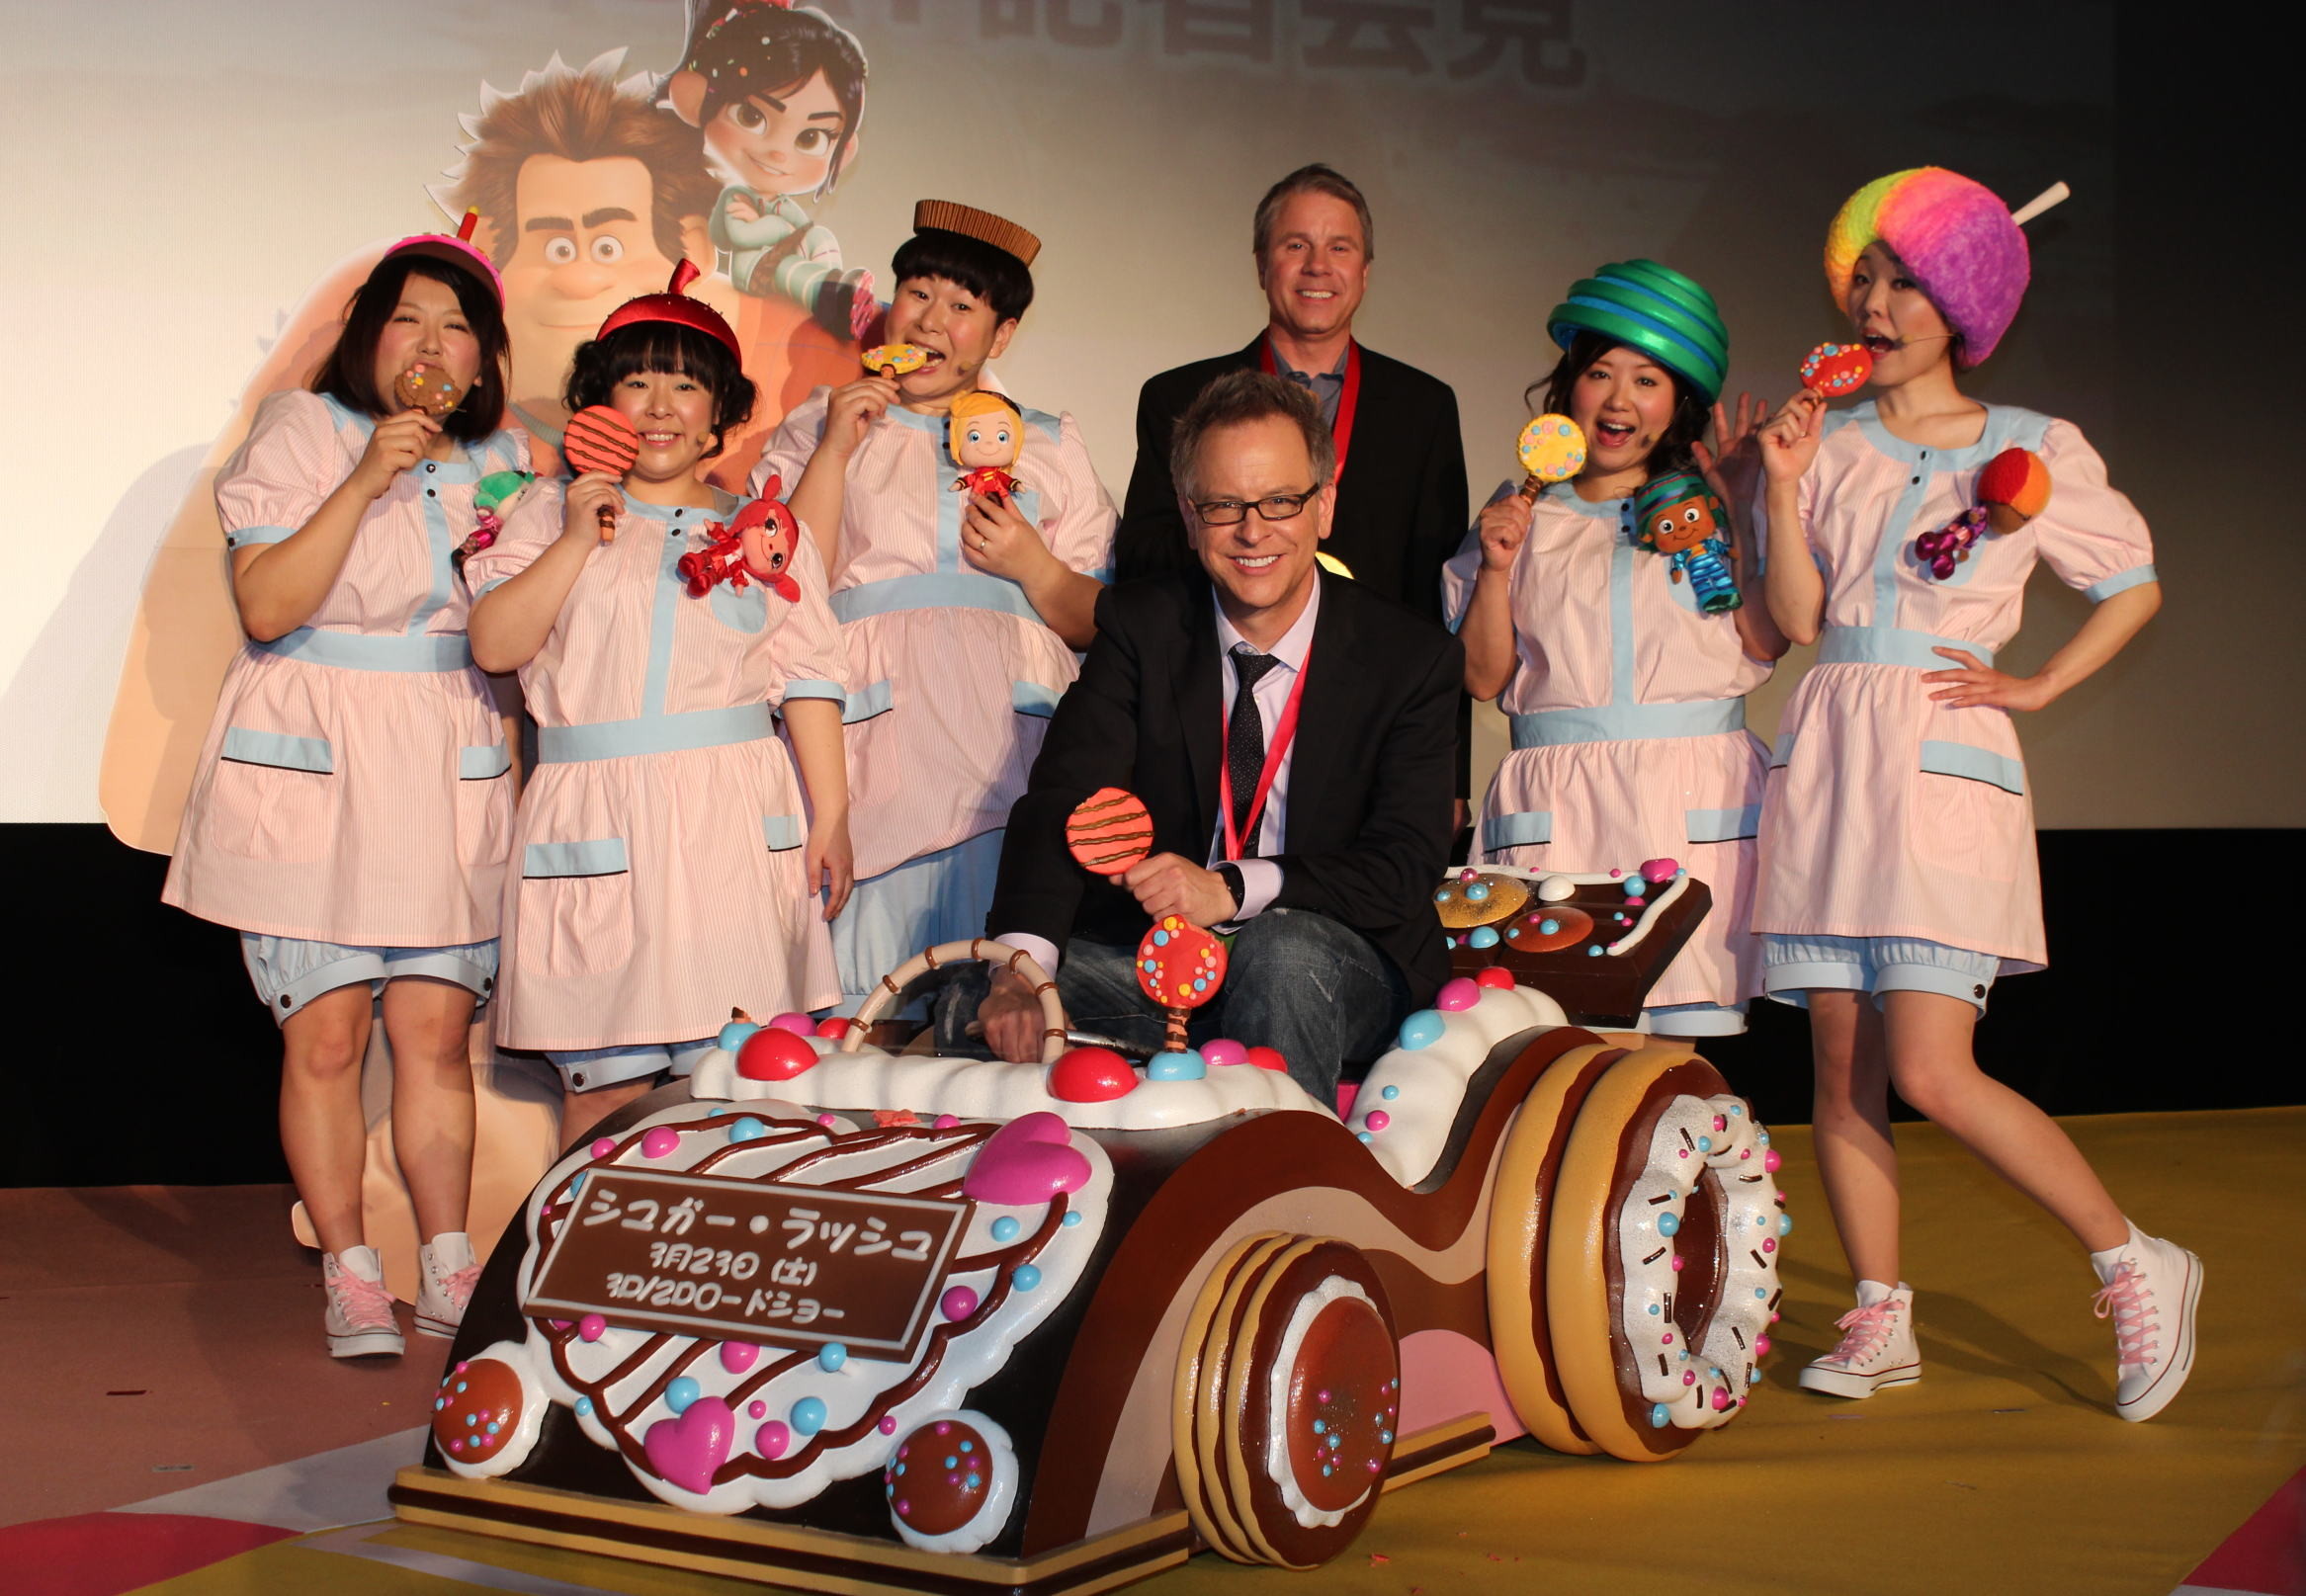 「シュガー・ラッシュ」監督、AKB48の全世界挿入歌は「映画にぴったり」